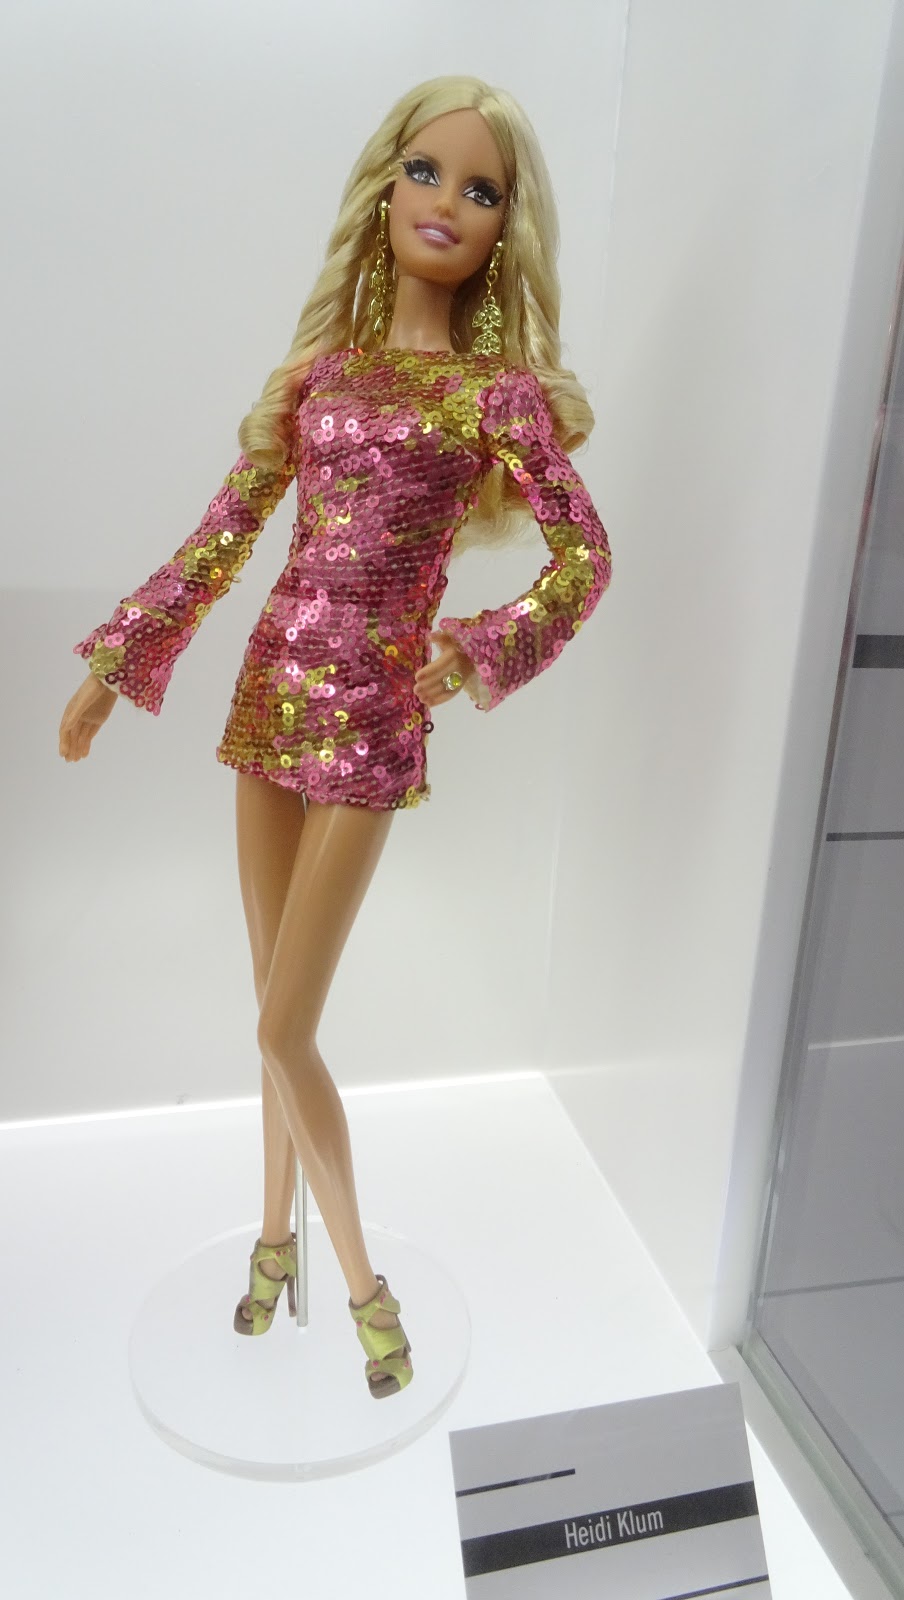 Montreals Barbie Expo